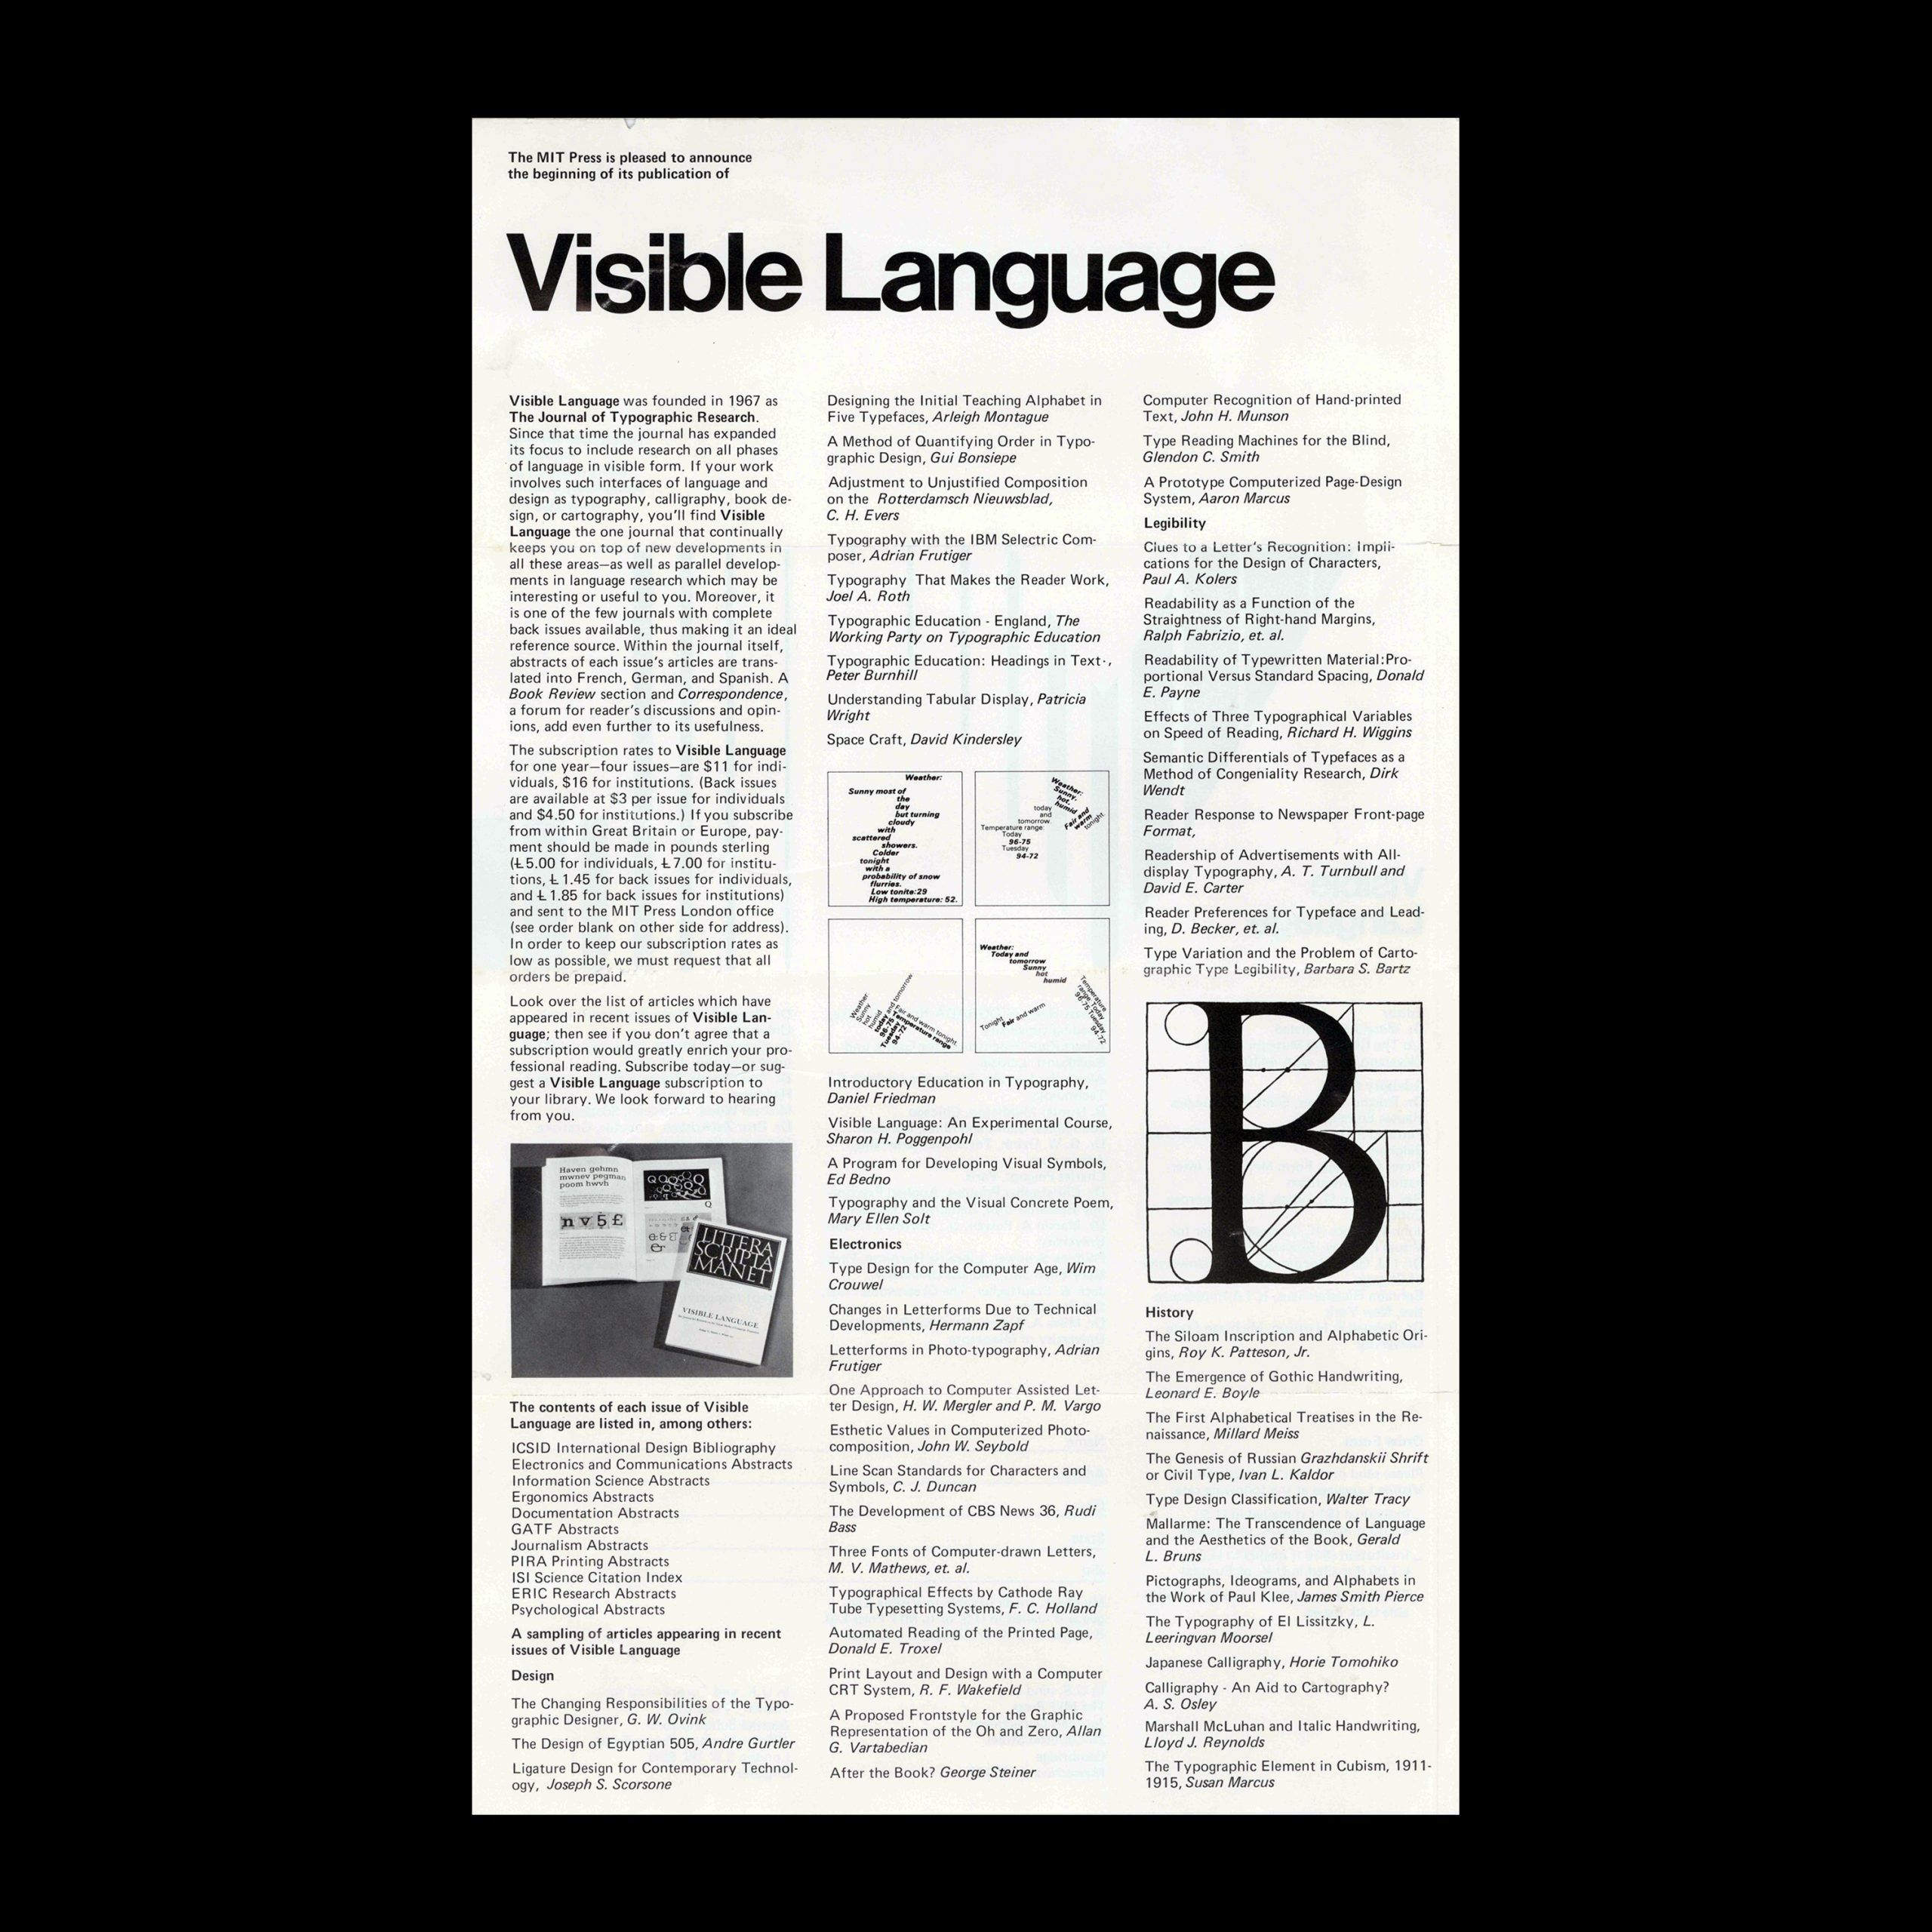 Visible Language Announcement, MIT Press, 1960s